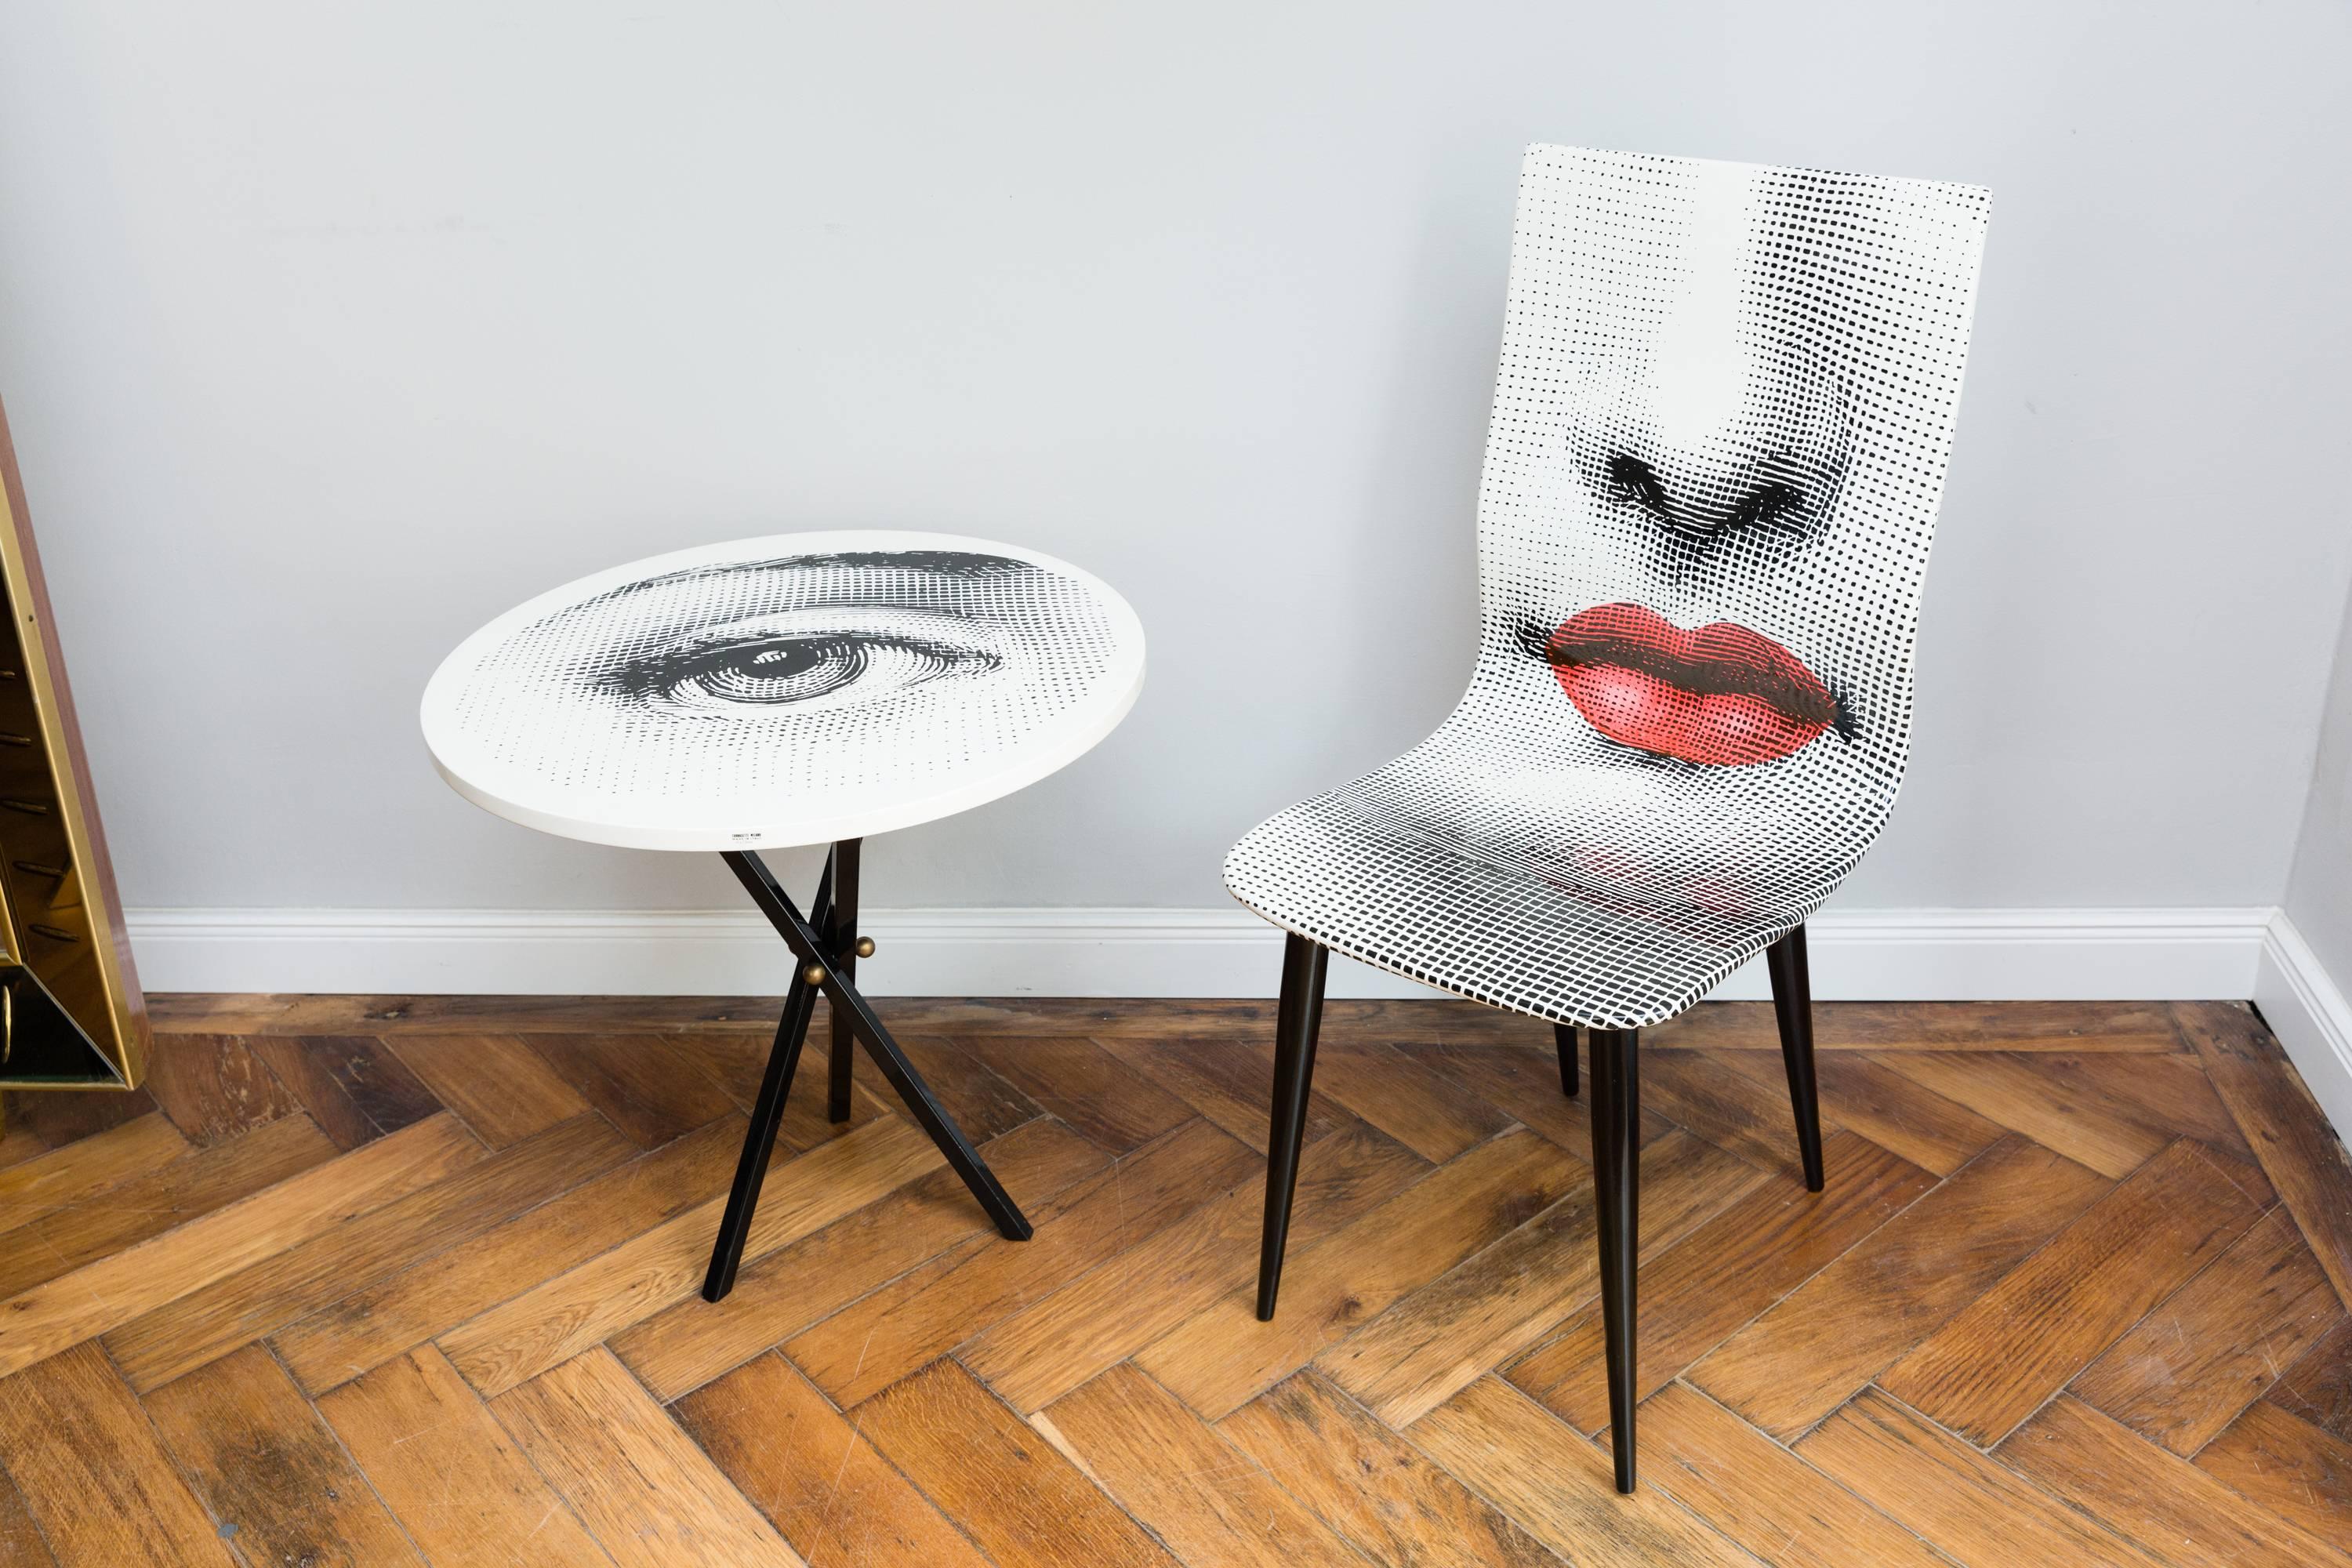 Pierro Fornasetti Bocca Chair, Italy Milano, 2006 For Sale 2